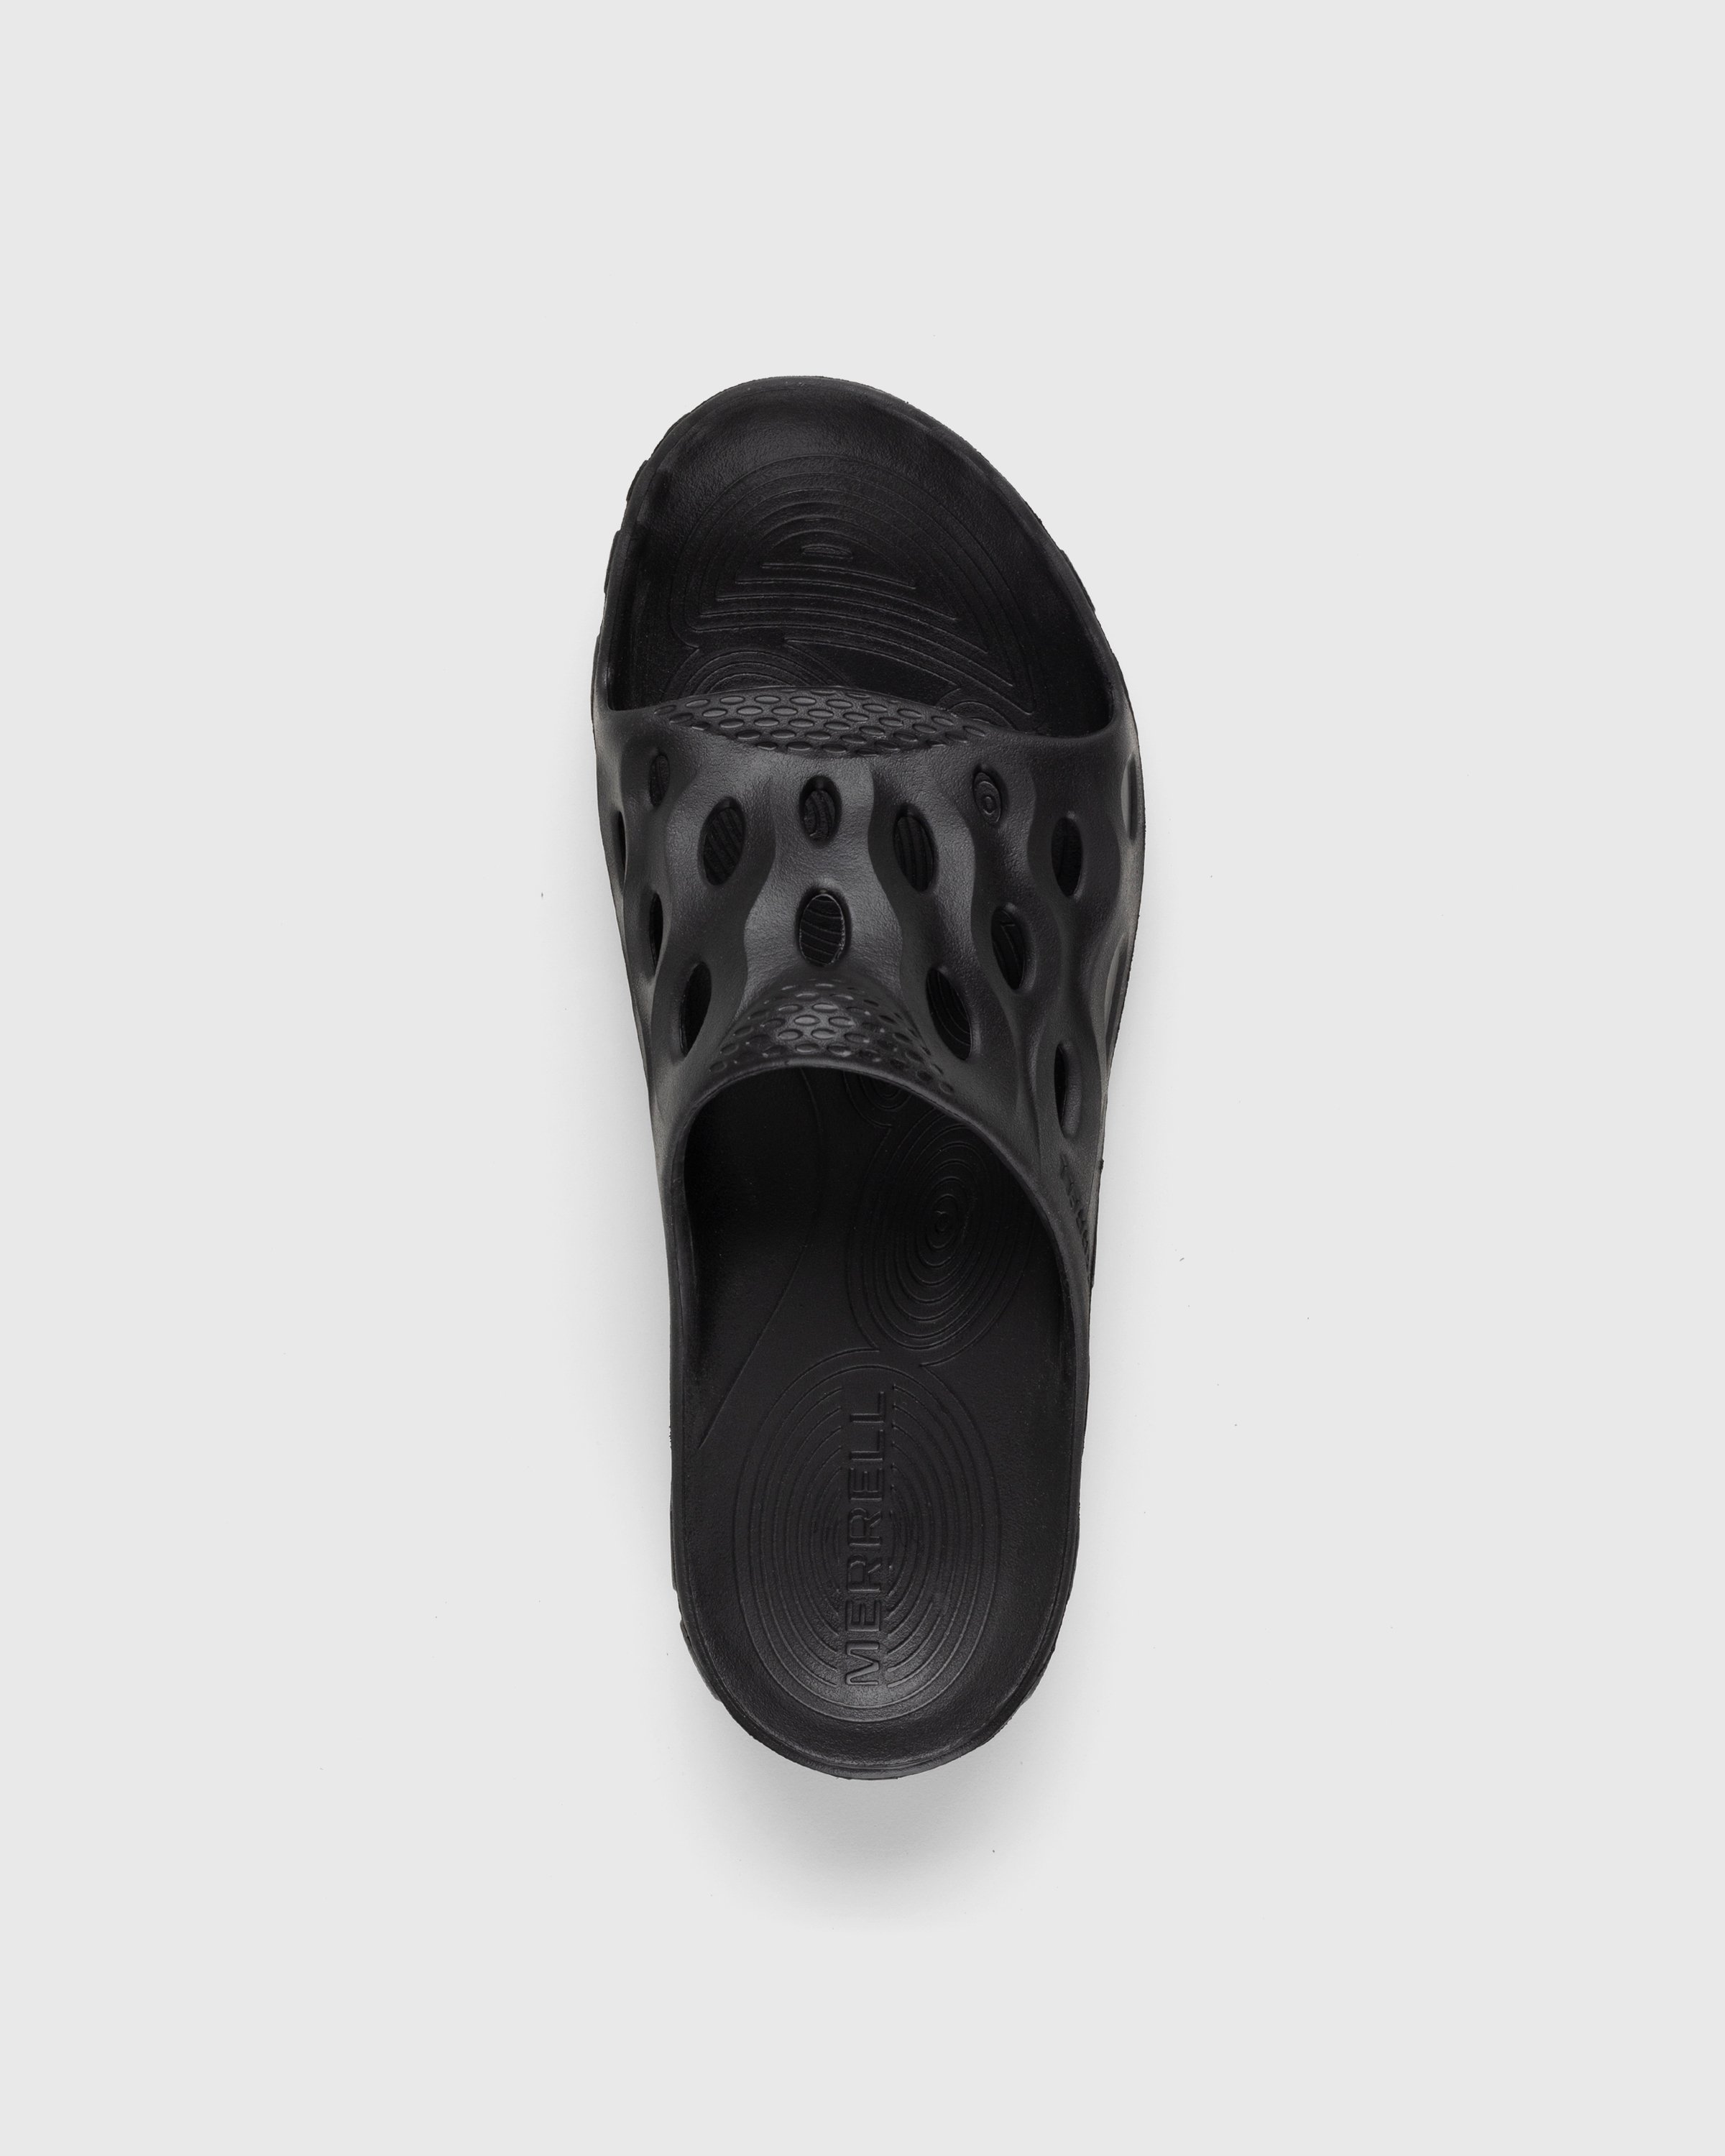 Merrell - Hydro Slide Black/Grey - Footwear - Black - Image 5